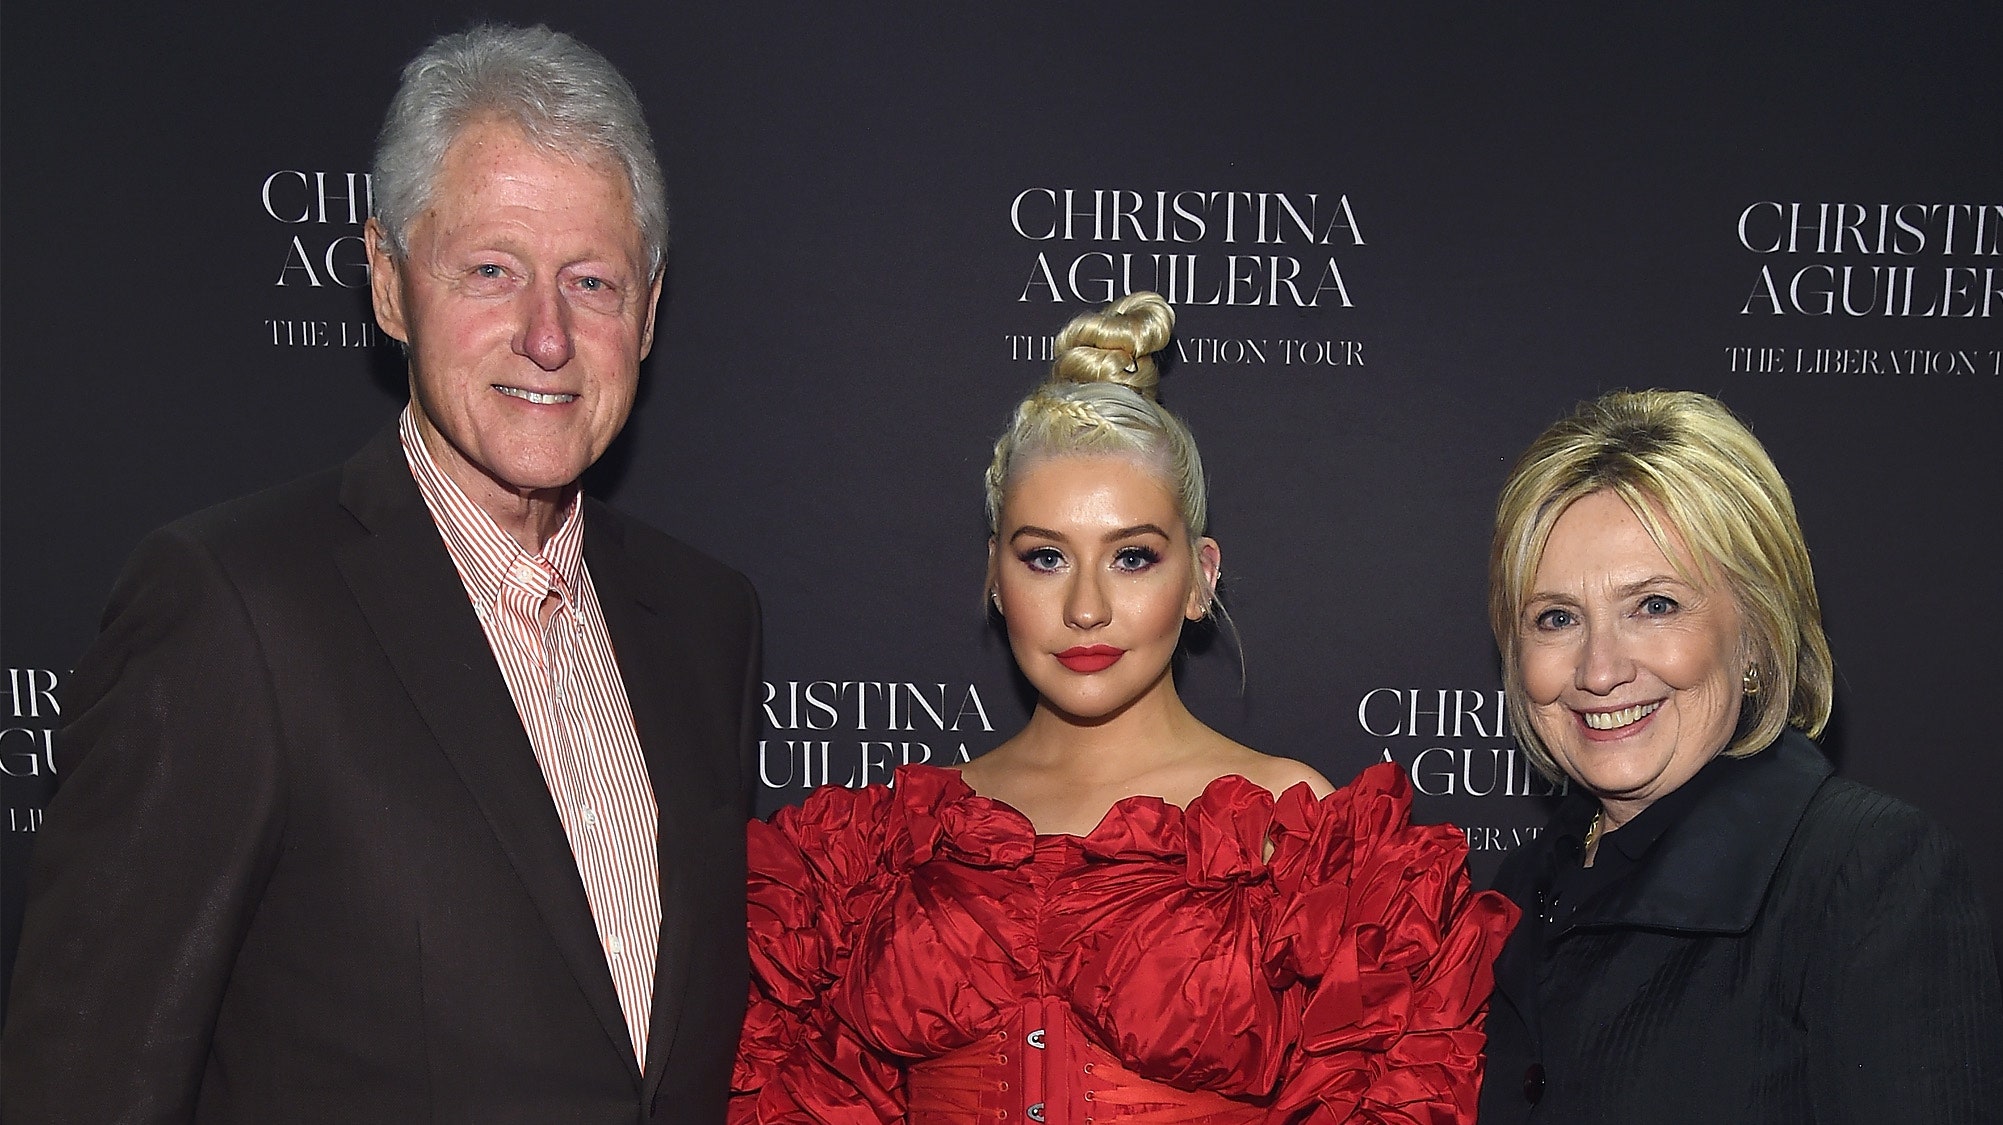 Билл Клинтон пригласил жену на концерт Кристины Агилеры